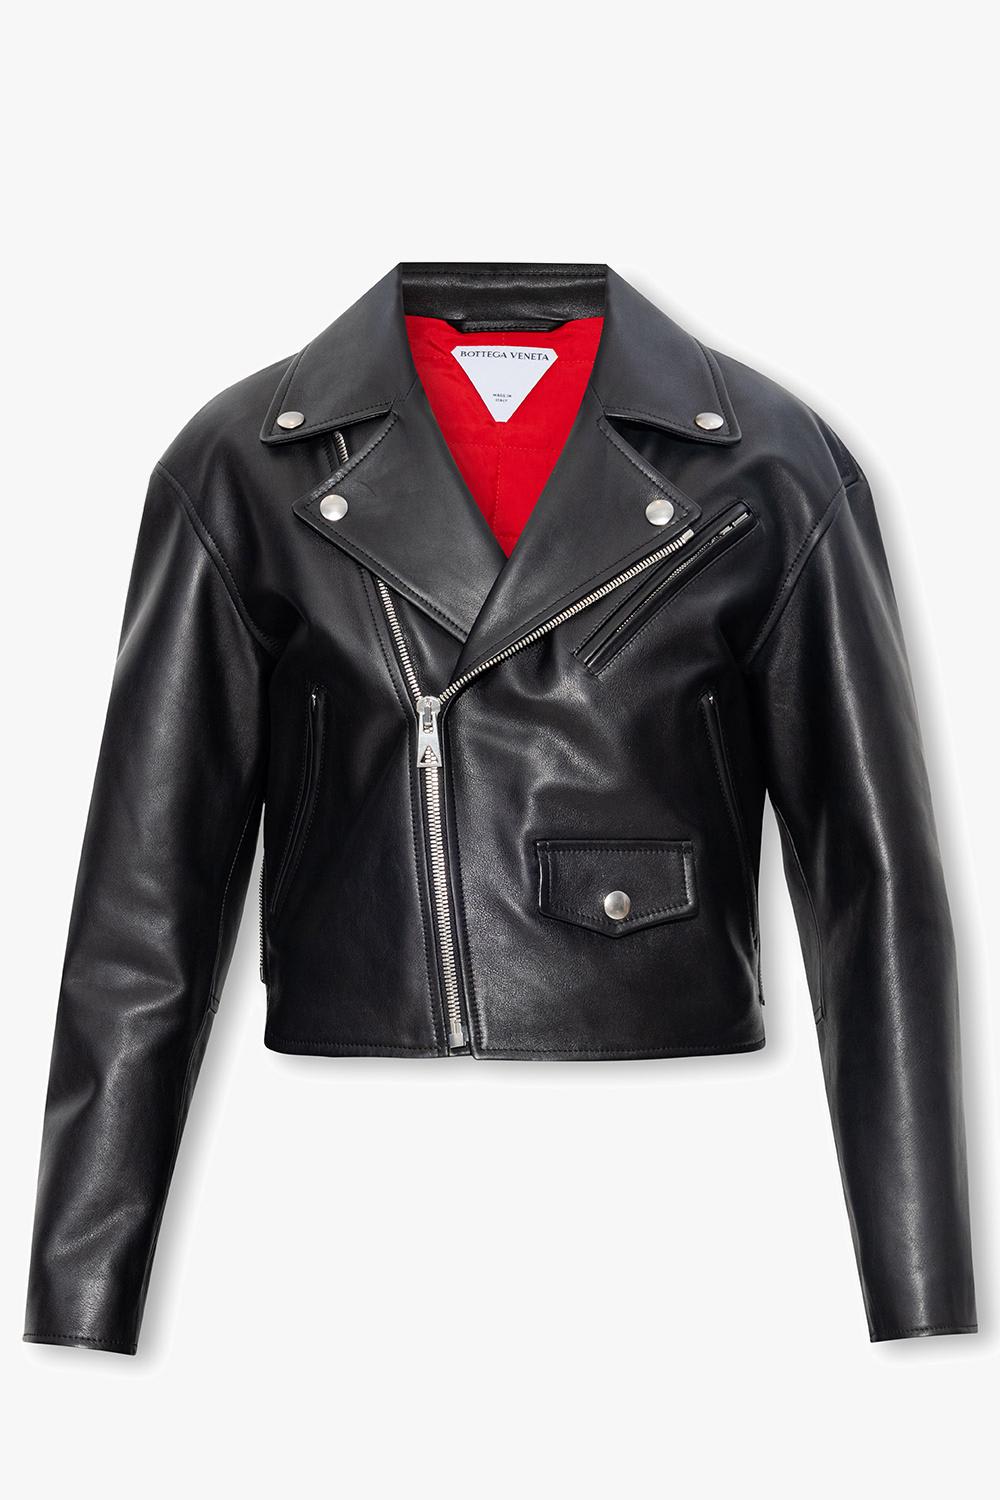 Bottega Veneta Leather Biker Jacket